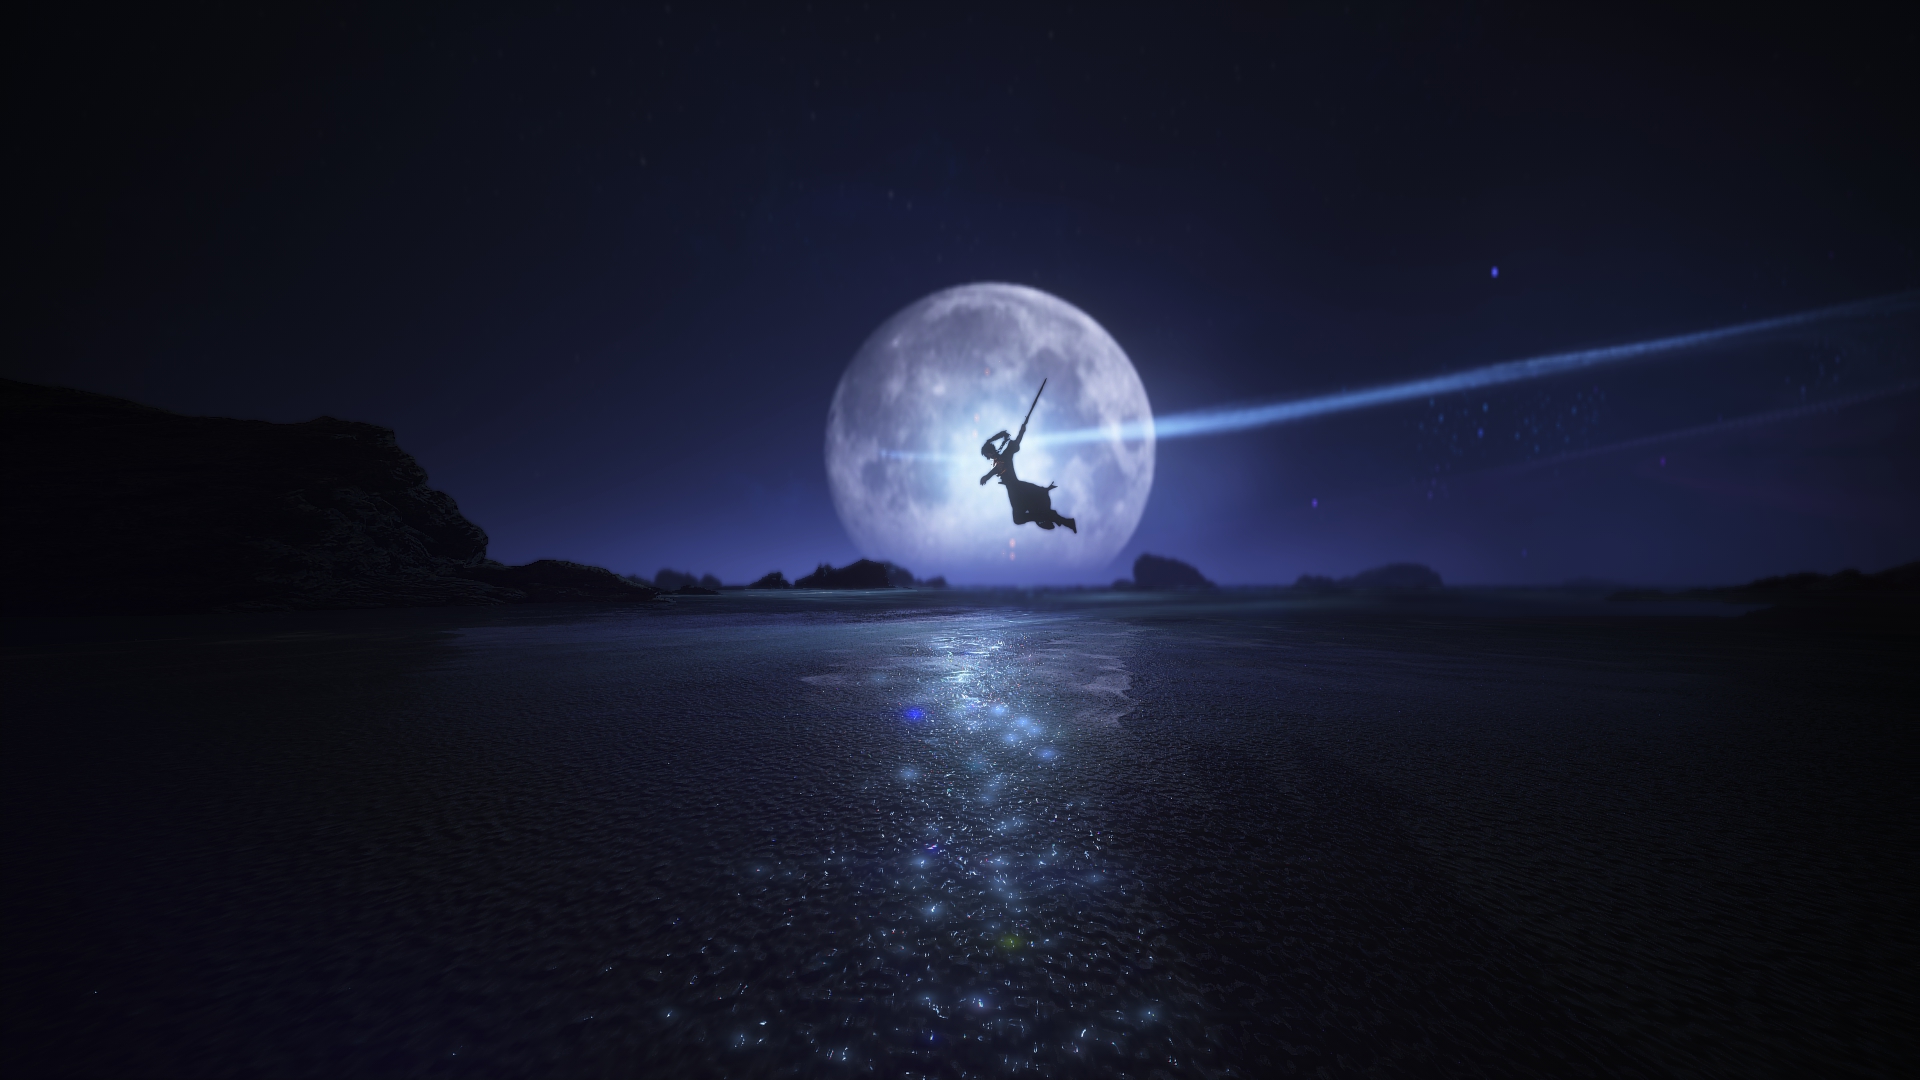 Bộ sưu tập hình nền Beiluo Swords Of Legends Moon PC Gaming Wallpaper sẽ đưa bạn đến với một thế giới giả tưởng xa xôi, đầy màu sắc và hoành tráng. Bạn sẽ được thưởng thức những hình nền mang tính thẩm mỹ cao, độc đáo và sáng tạo cho máy tính của mình.